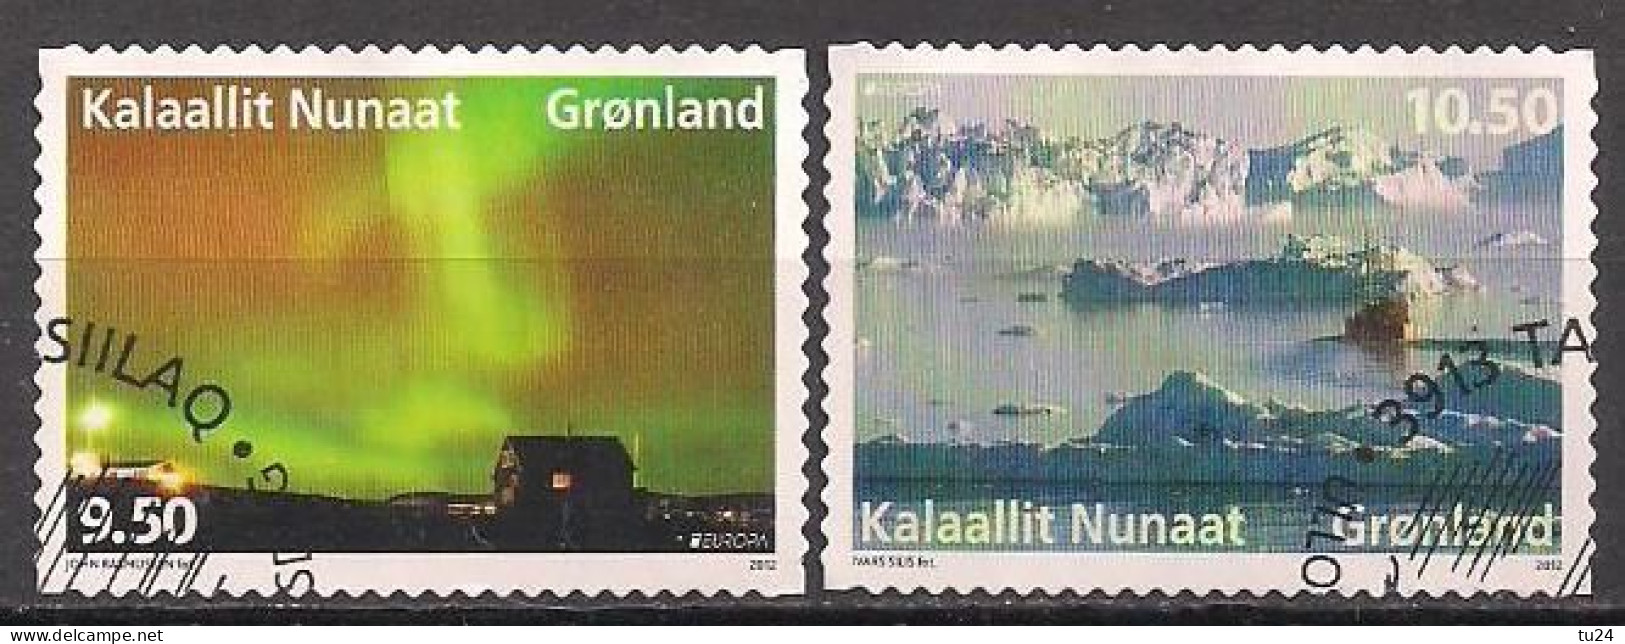 DK - Grönland / Greenland  (2012)  Mi.Nr.  615 + 616  Gest. / Used  (1cg11)  MH / From Booklet  EUROPA - 2012